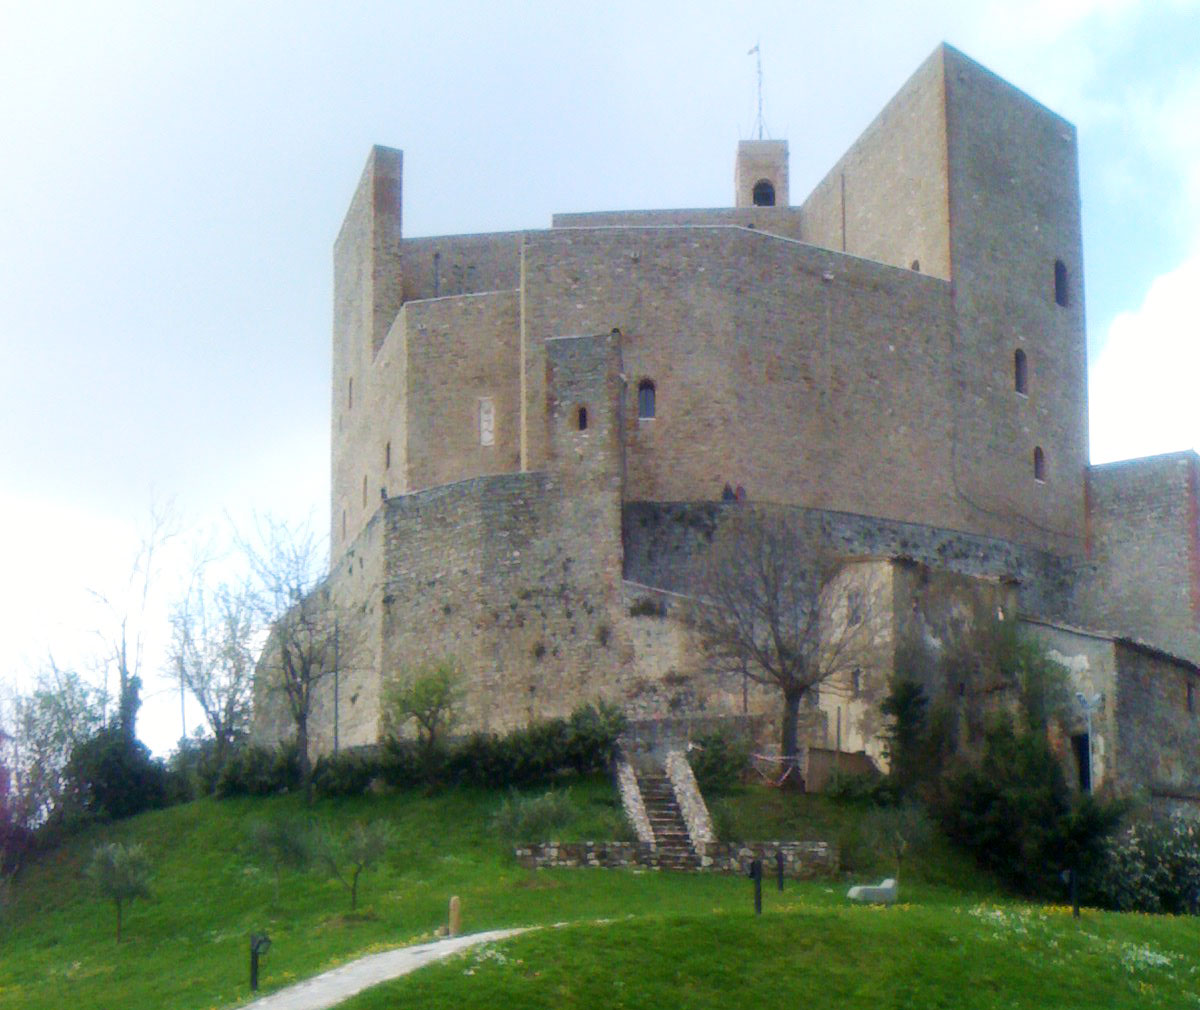 Castello di Montefiore Conca